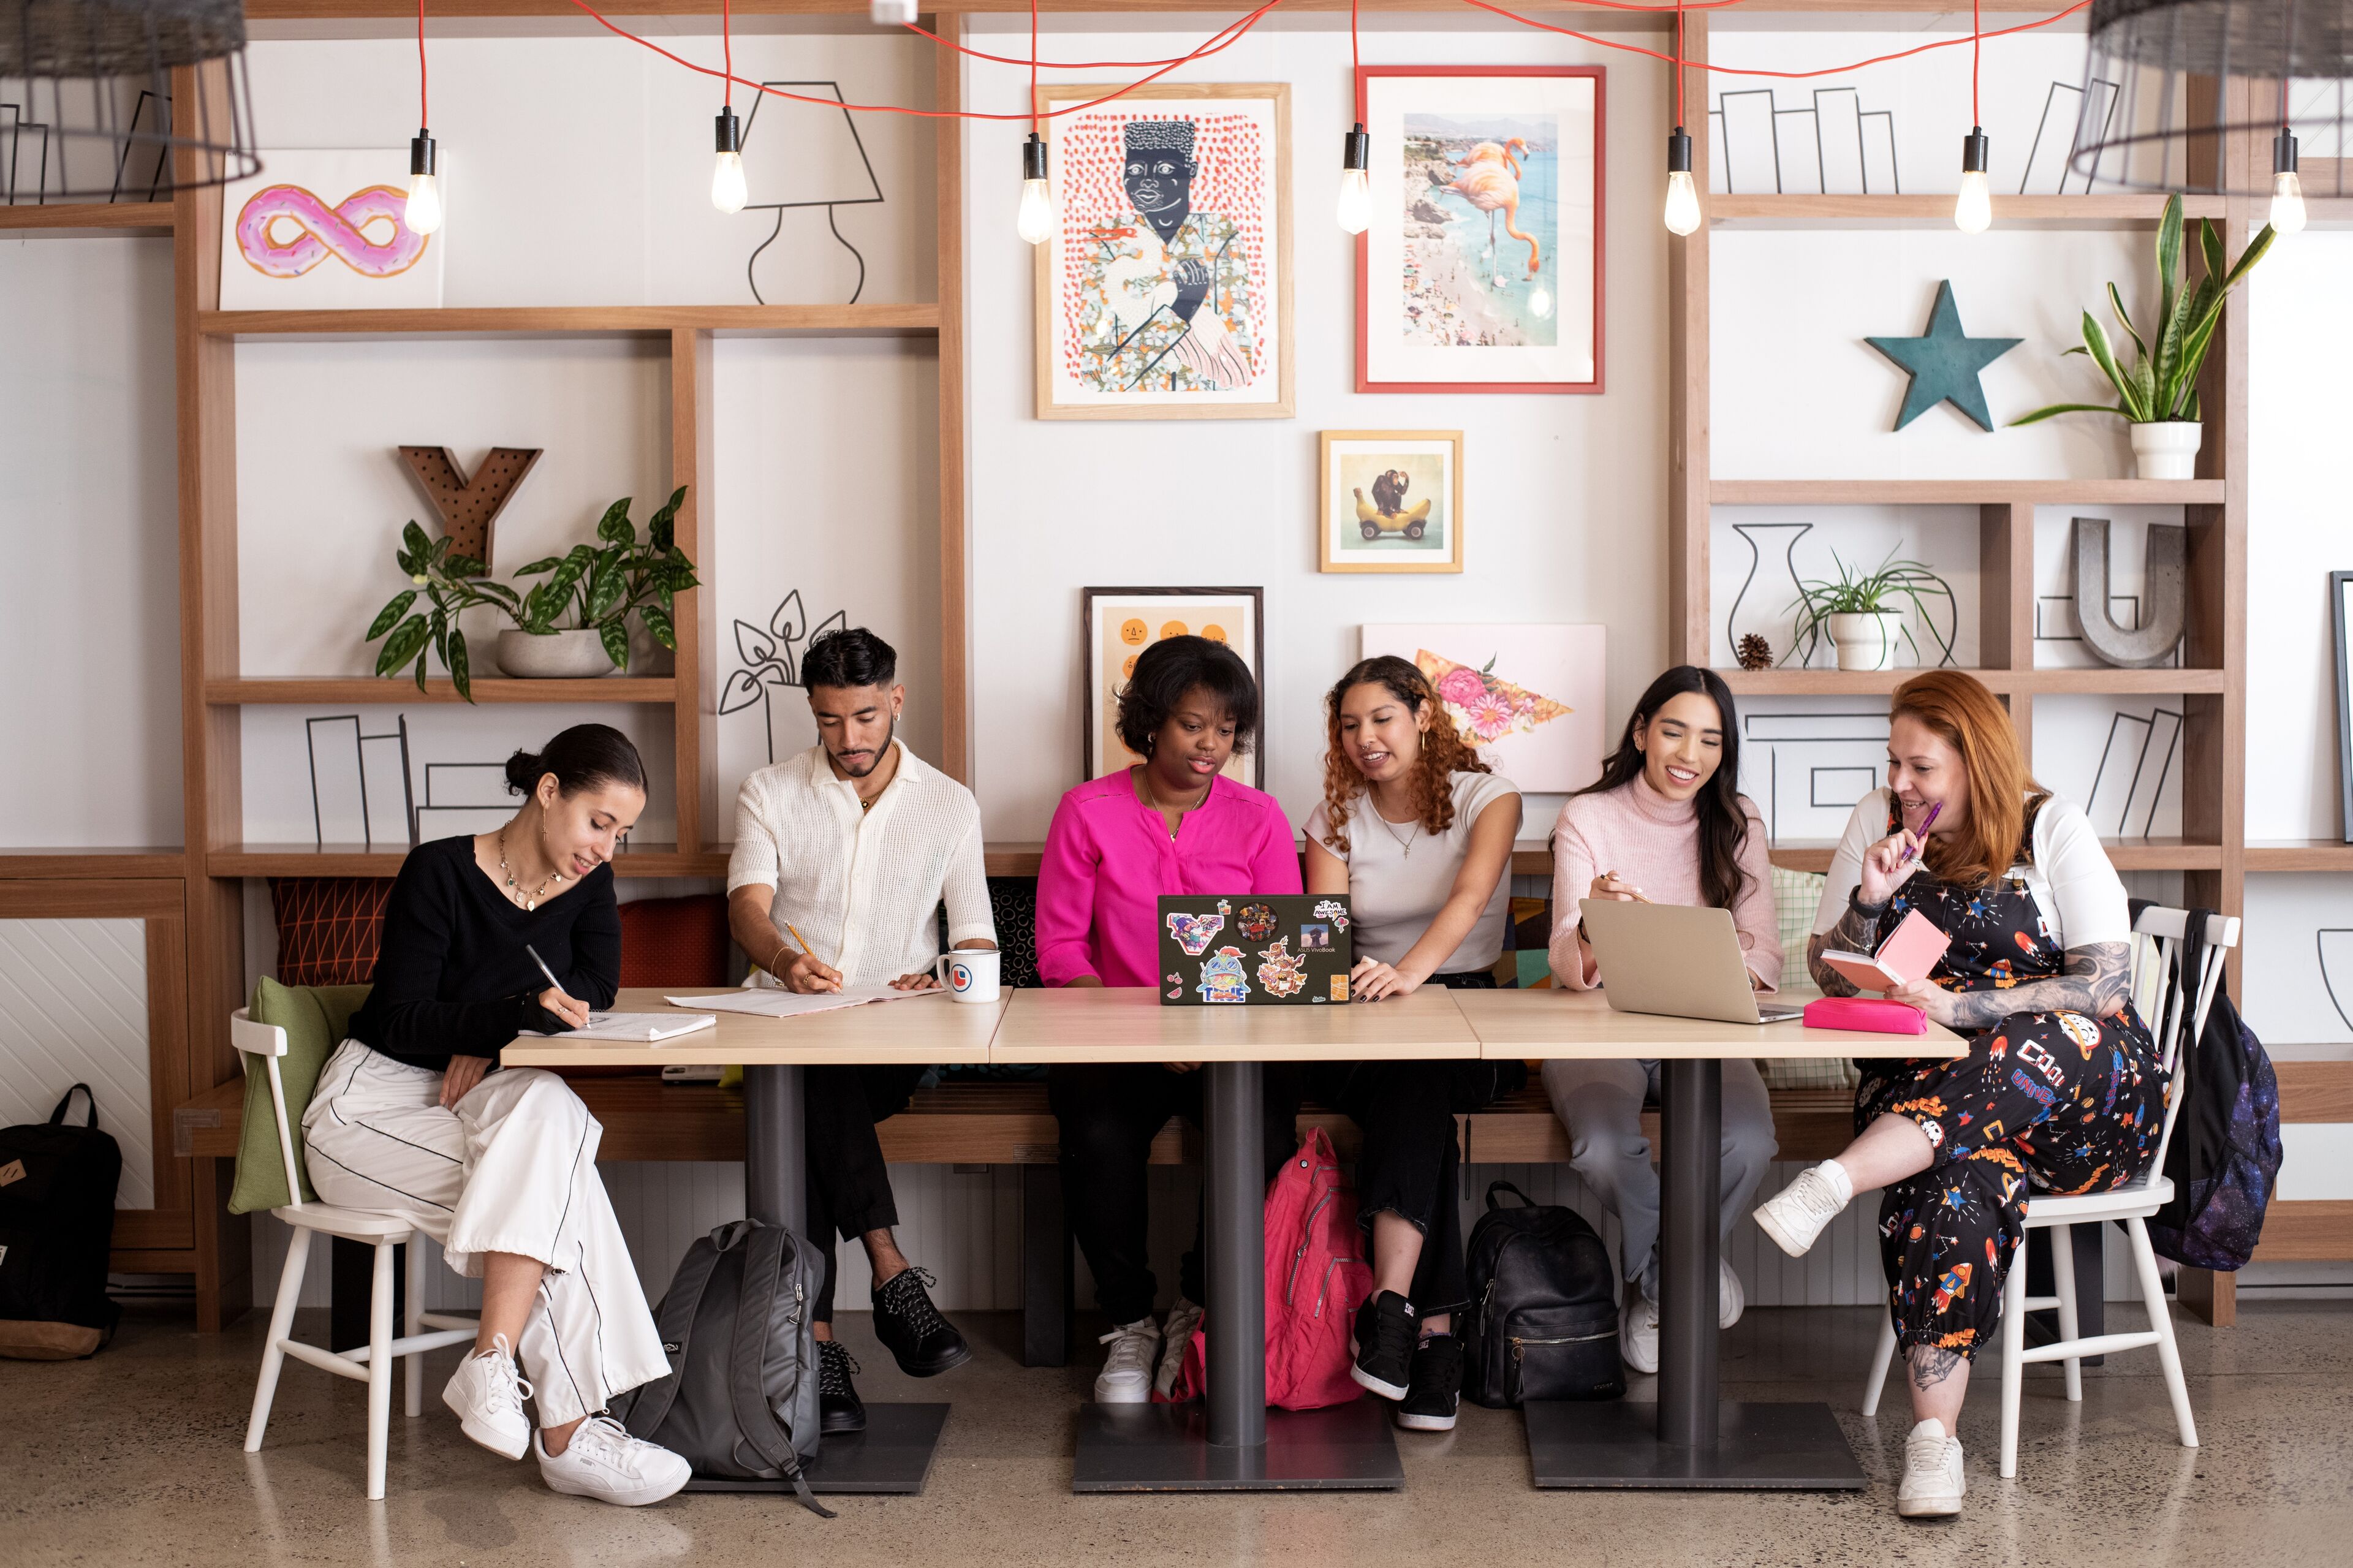 Un grupo diverso de individuos enfocados participando en trabajo creativo en un espacio compartido moderno.